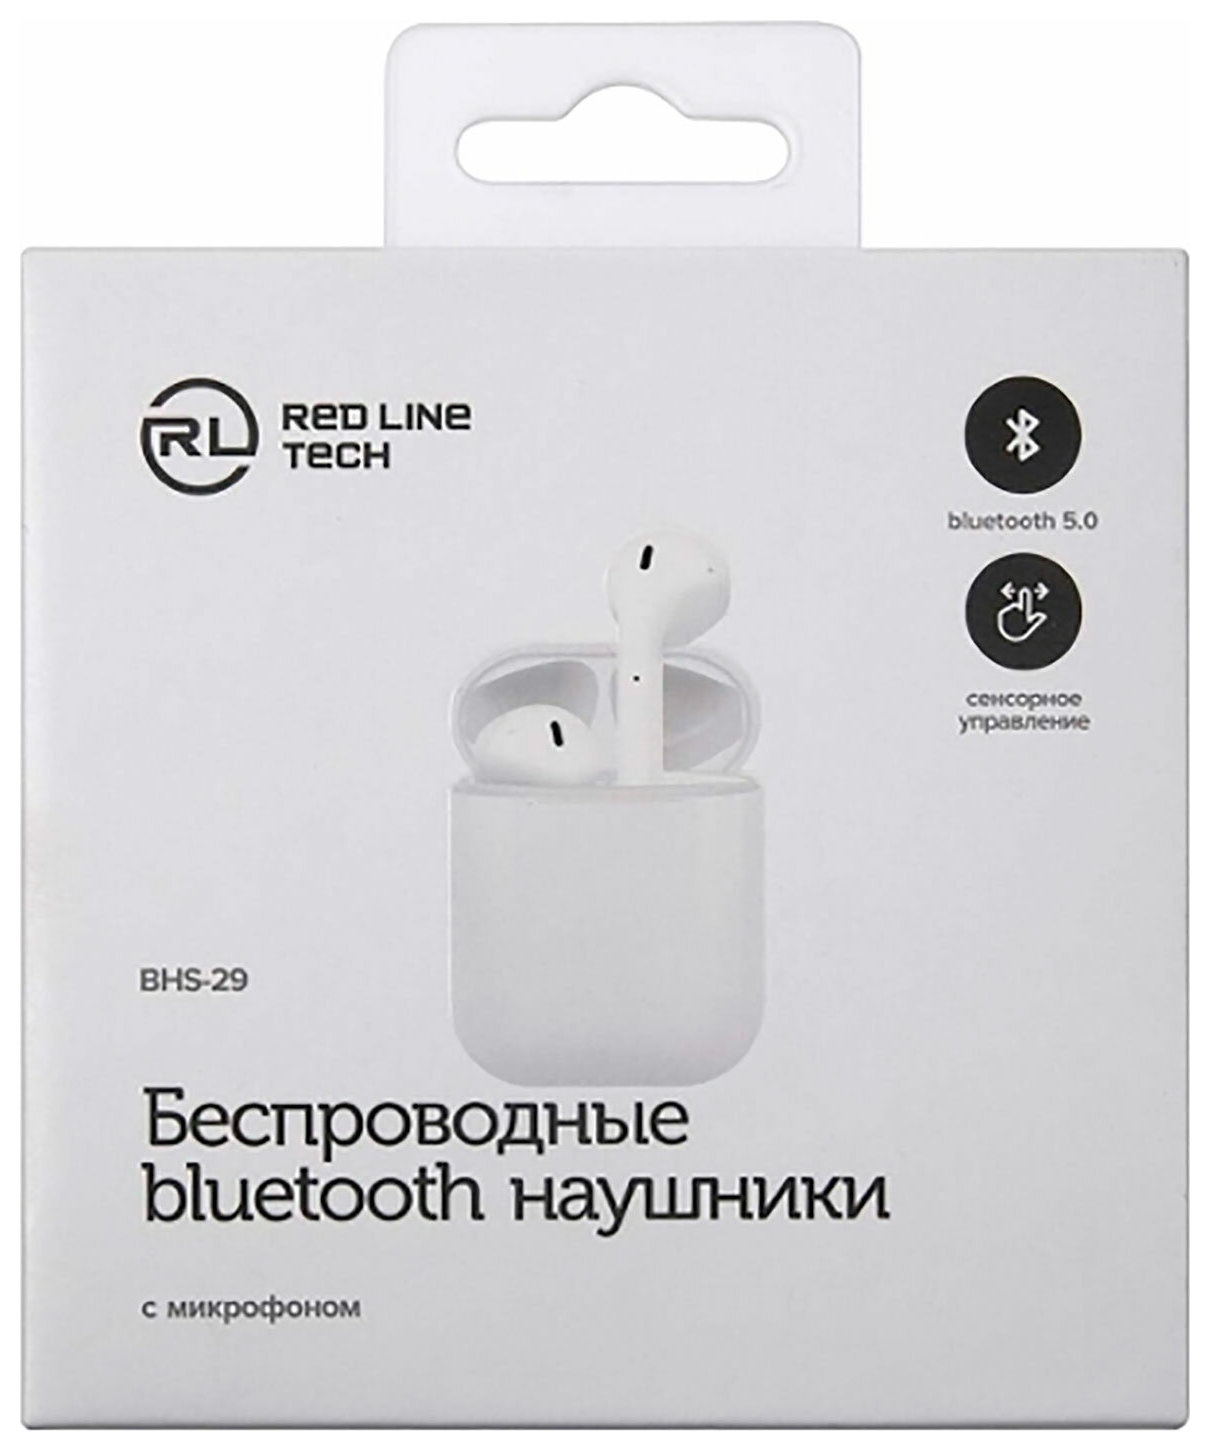 Наушники с микрофоном (Гарнитура) RED Line BHS - 29, Bluetooth, беспроводные, белые, ут000023018